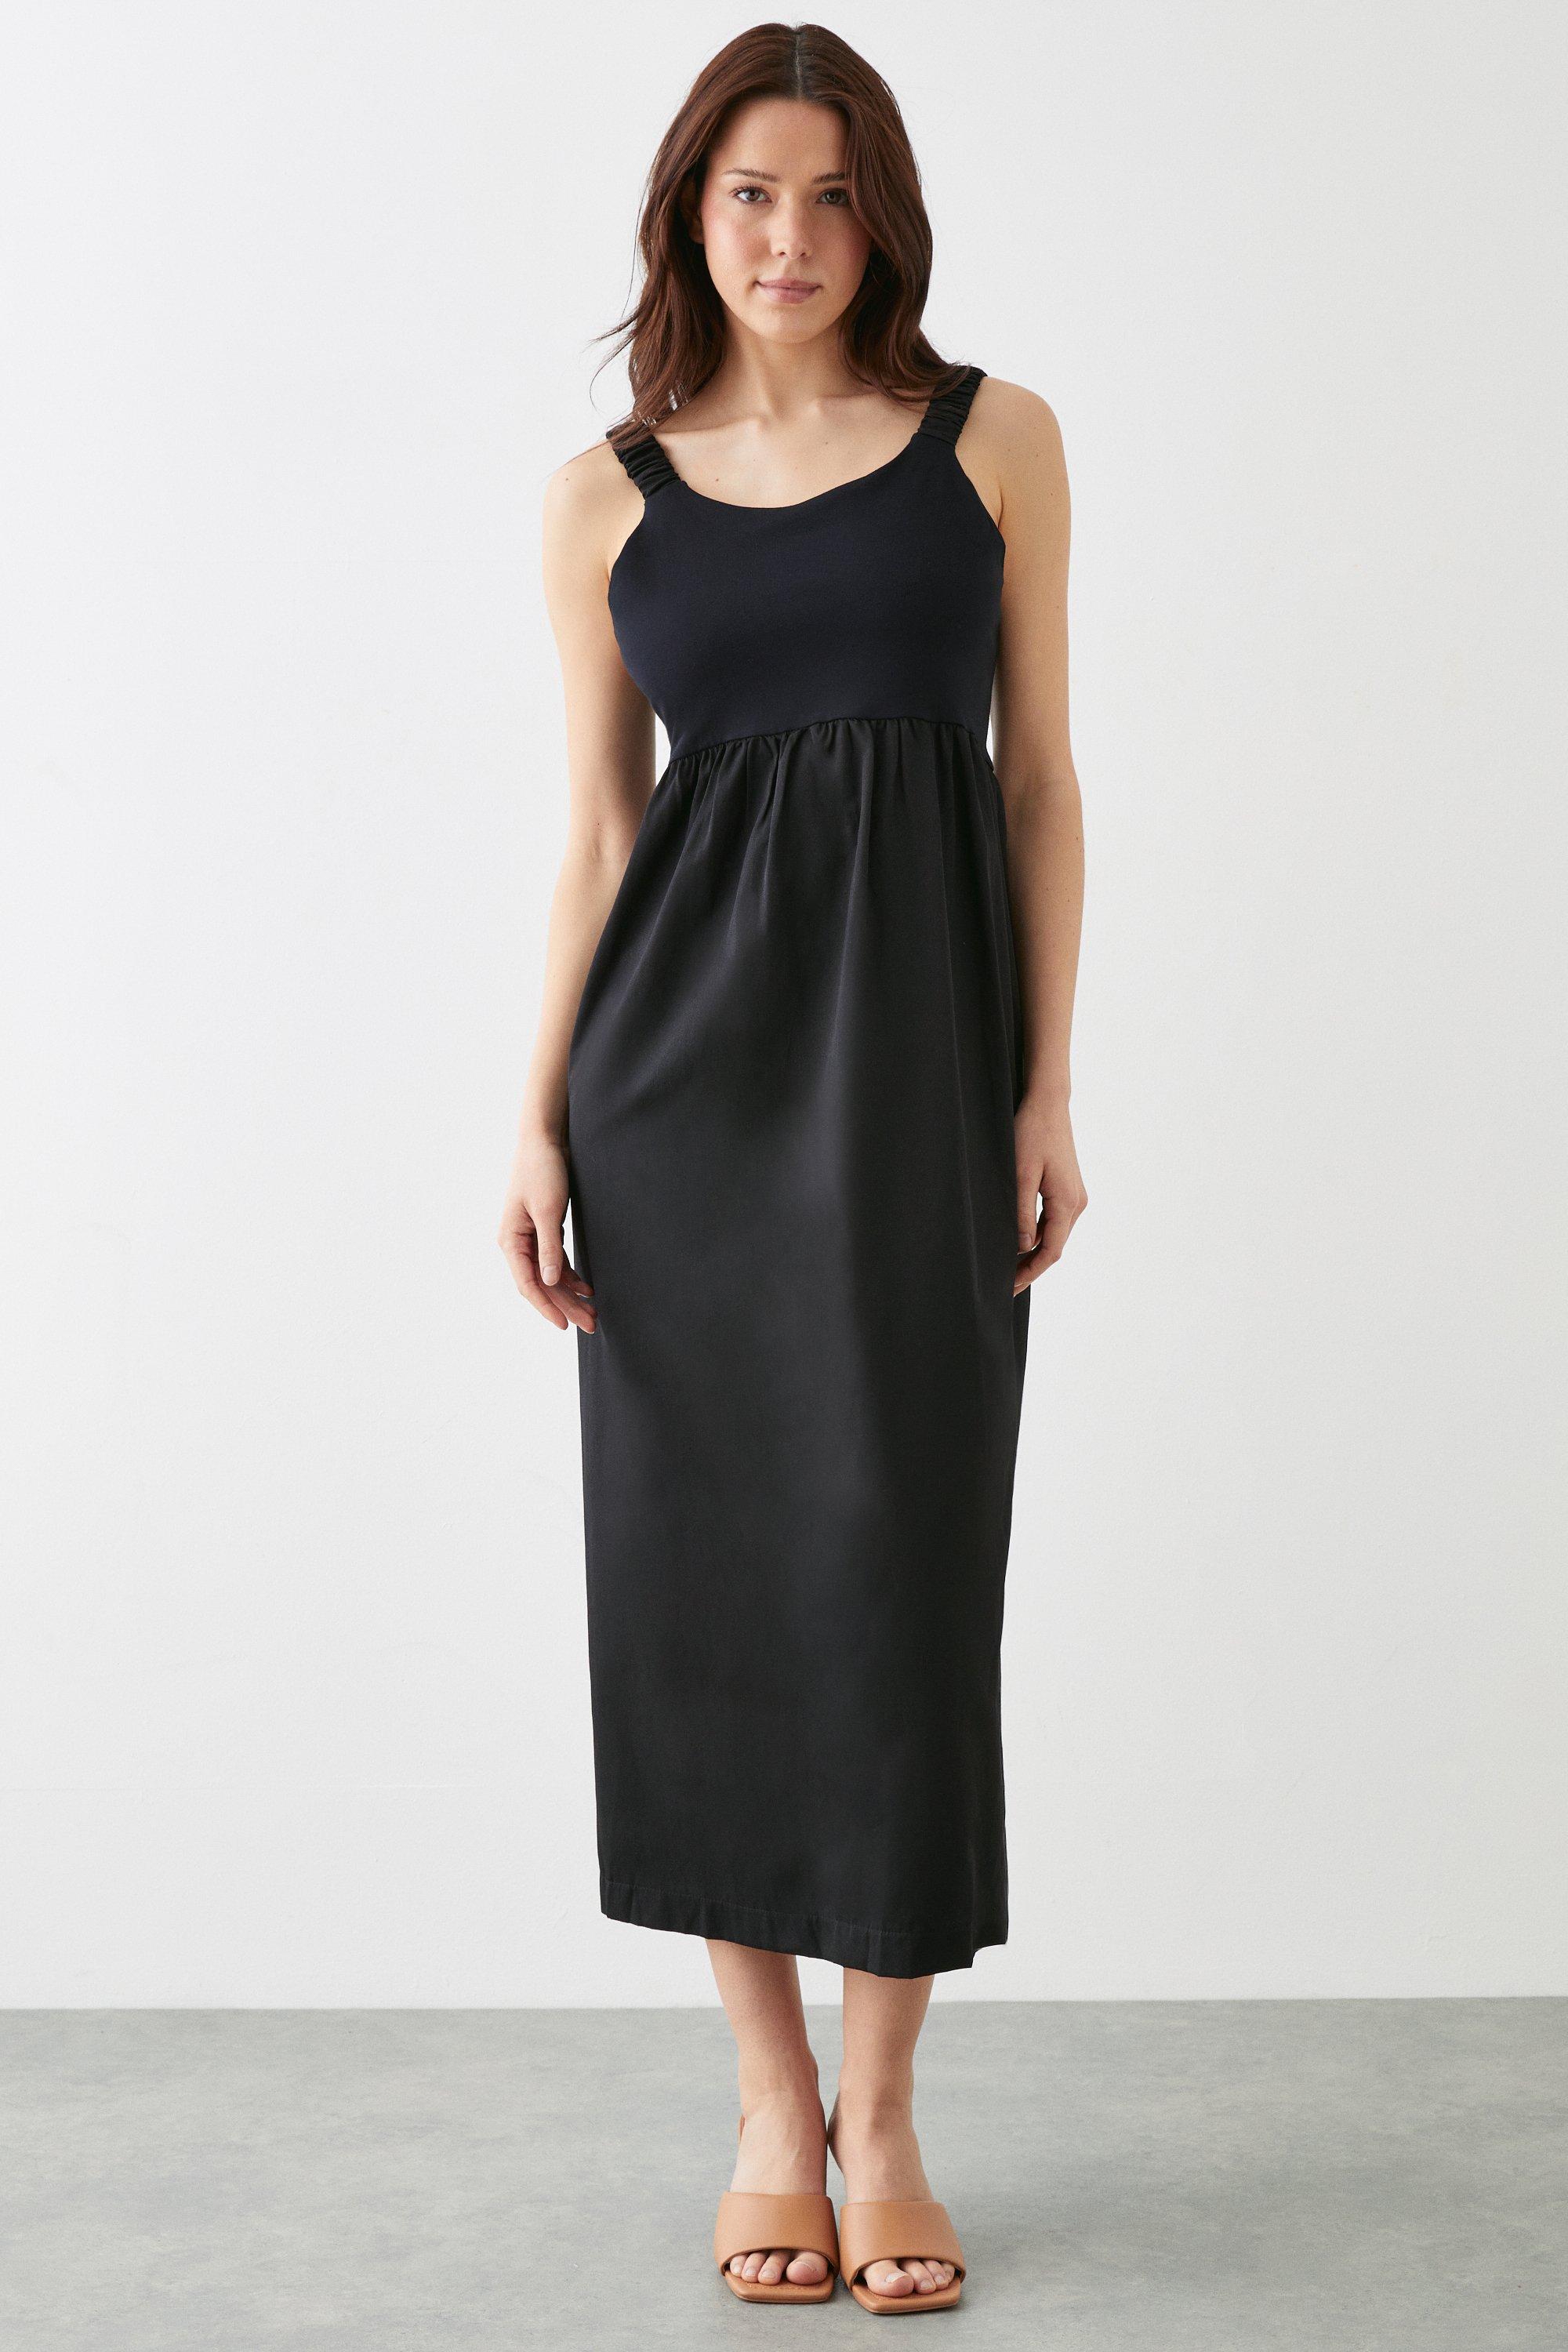 Women’s Black Sleeveless Jersey Woven Mix Midi Dress - M